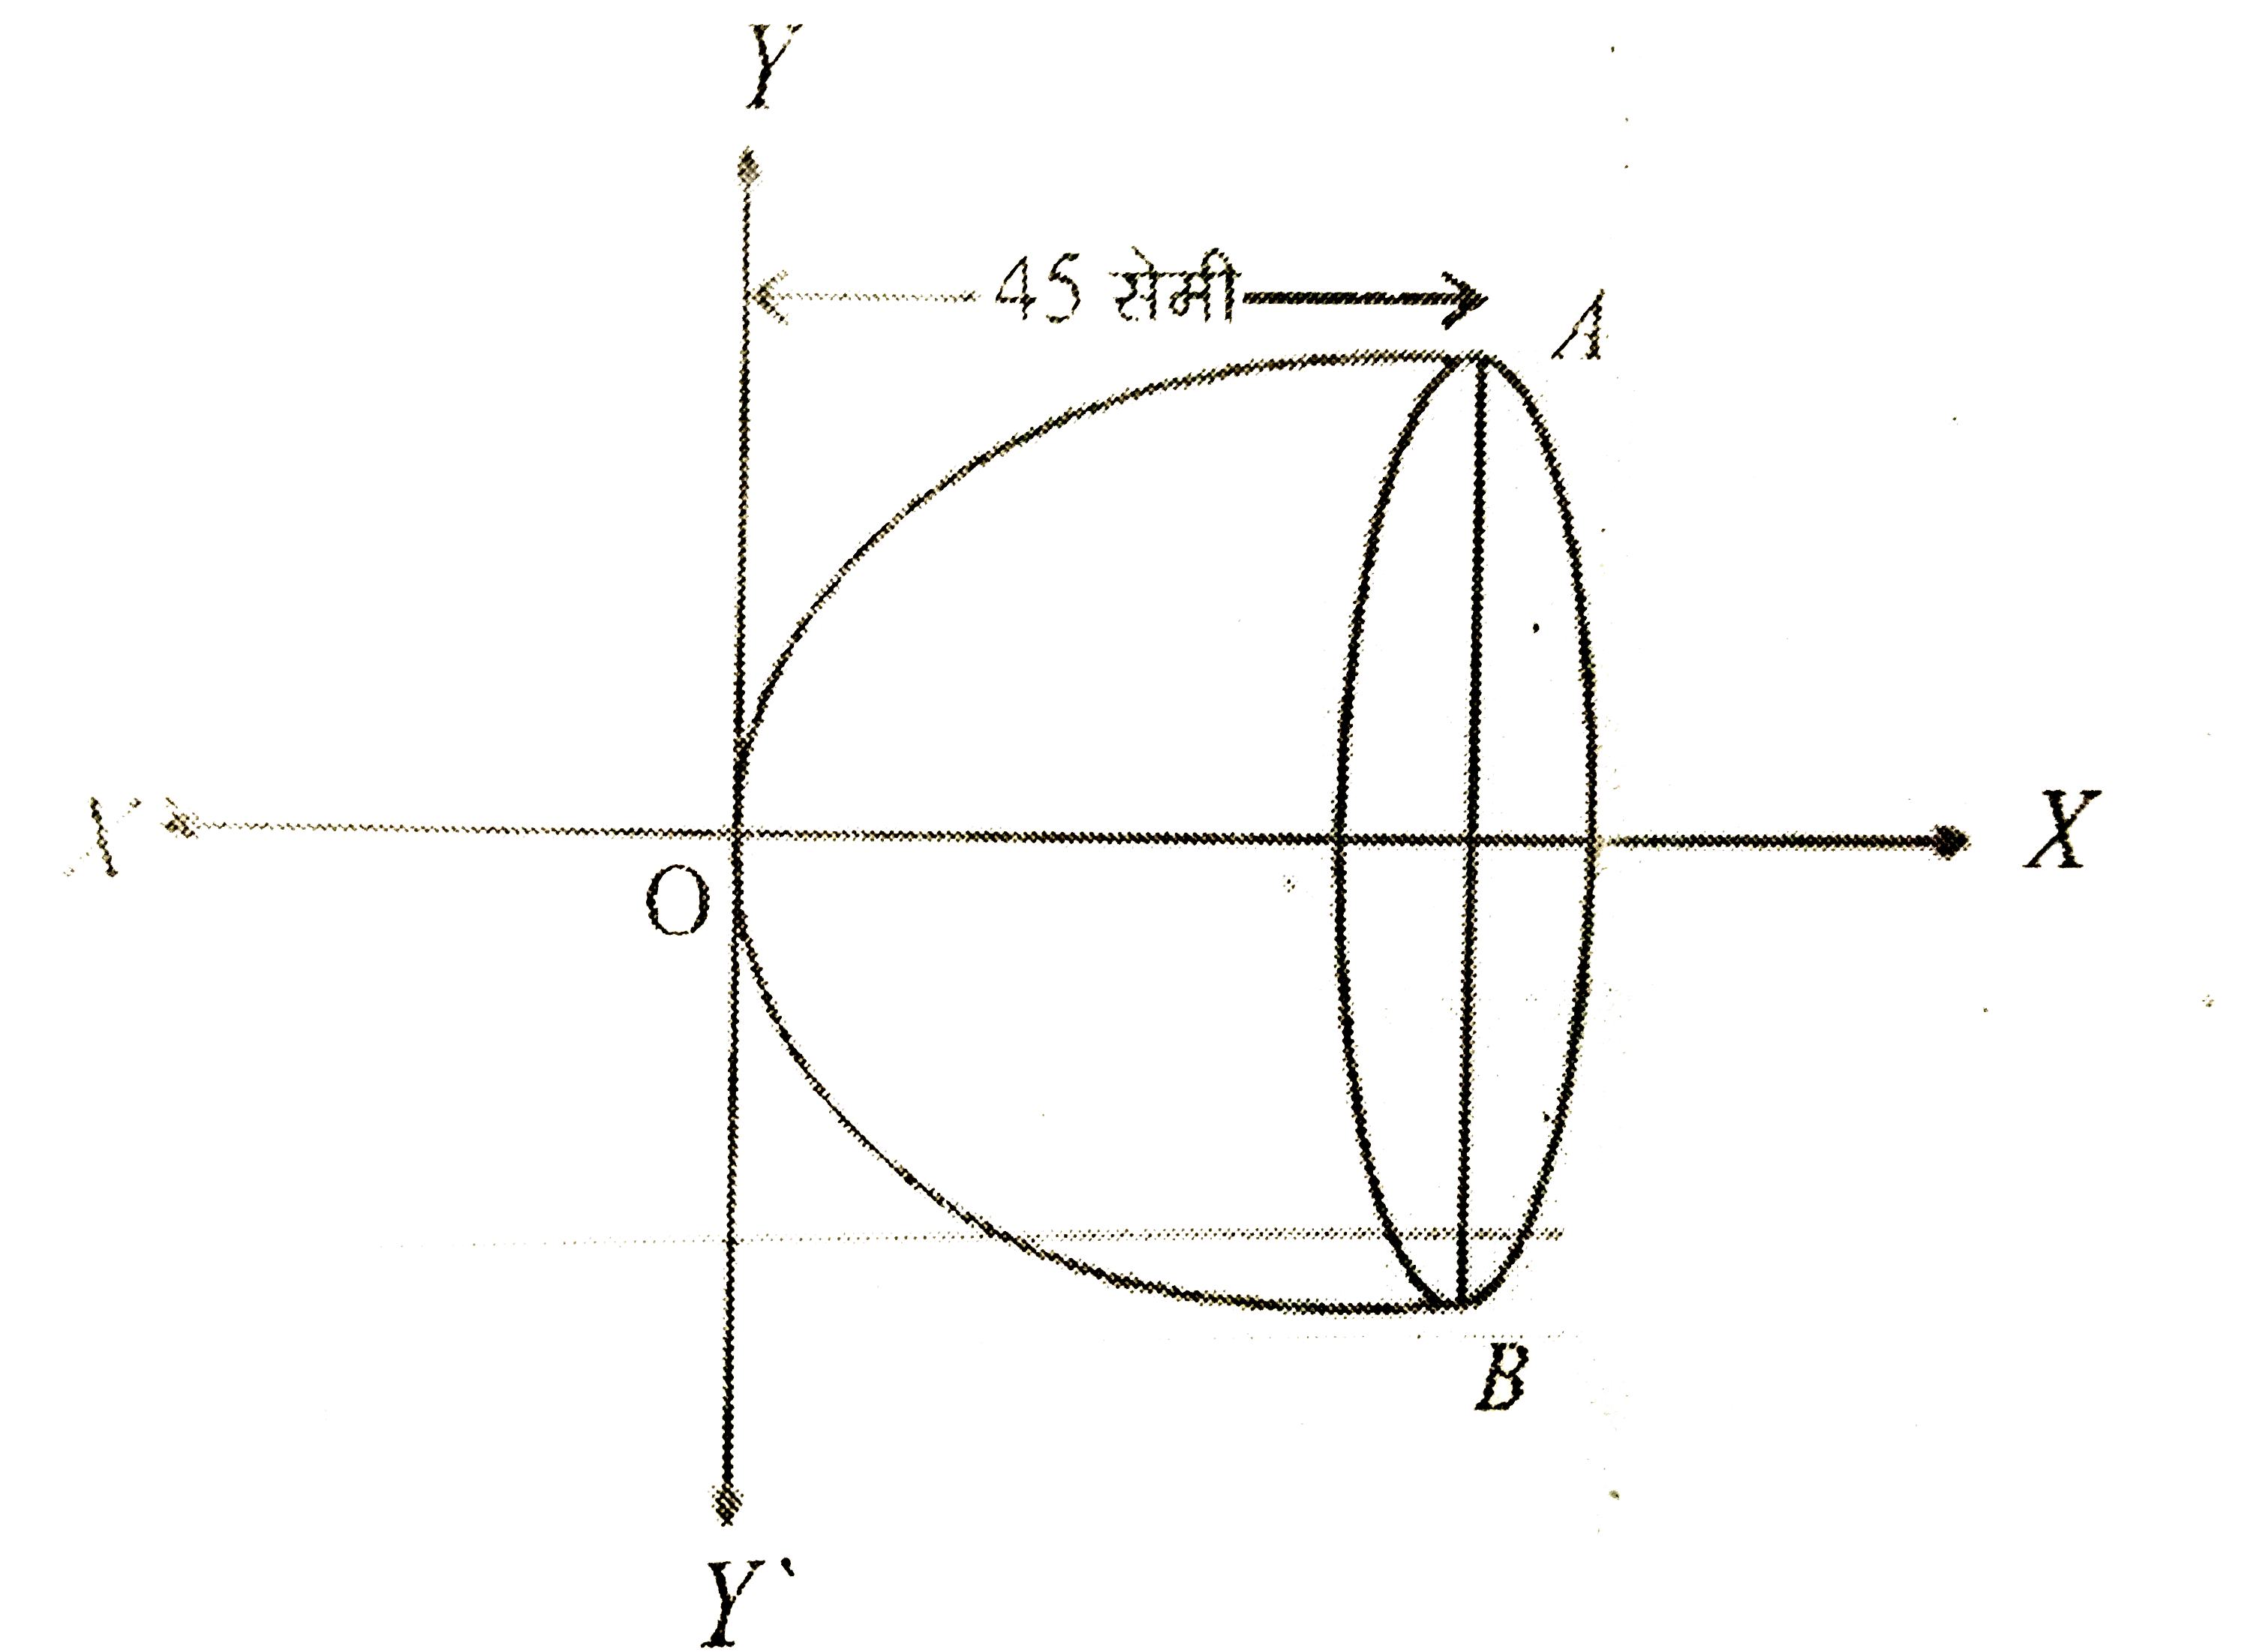 एक परवलयाकार परावर्तक कि नाभि, इसके शीर्ष केन्द्र से 5 सेमी कि दूरी पर है जैसा कि आकृति में दर्शाया गया है। यदि परावर्तक 45 सेमी गहरा है, तो आकृति में दूरी AB ज्ञात कीजिए।